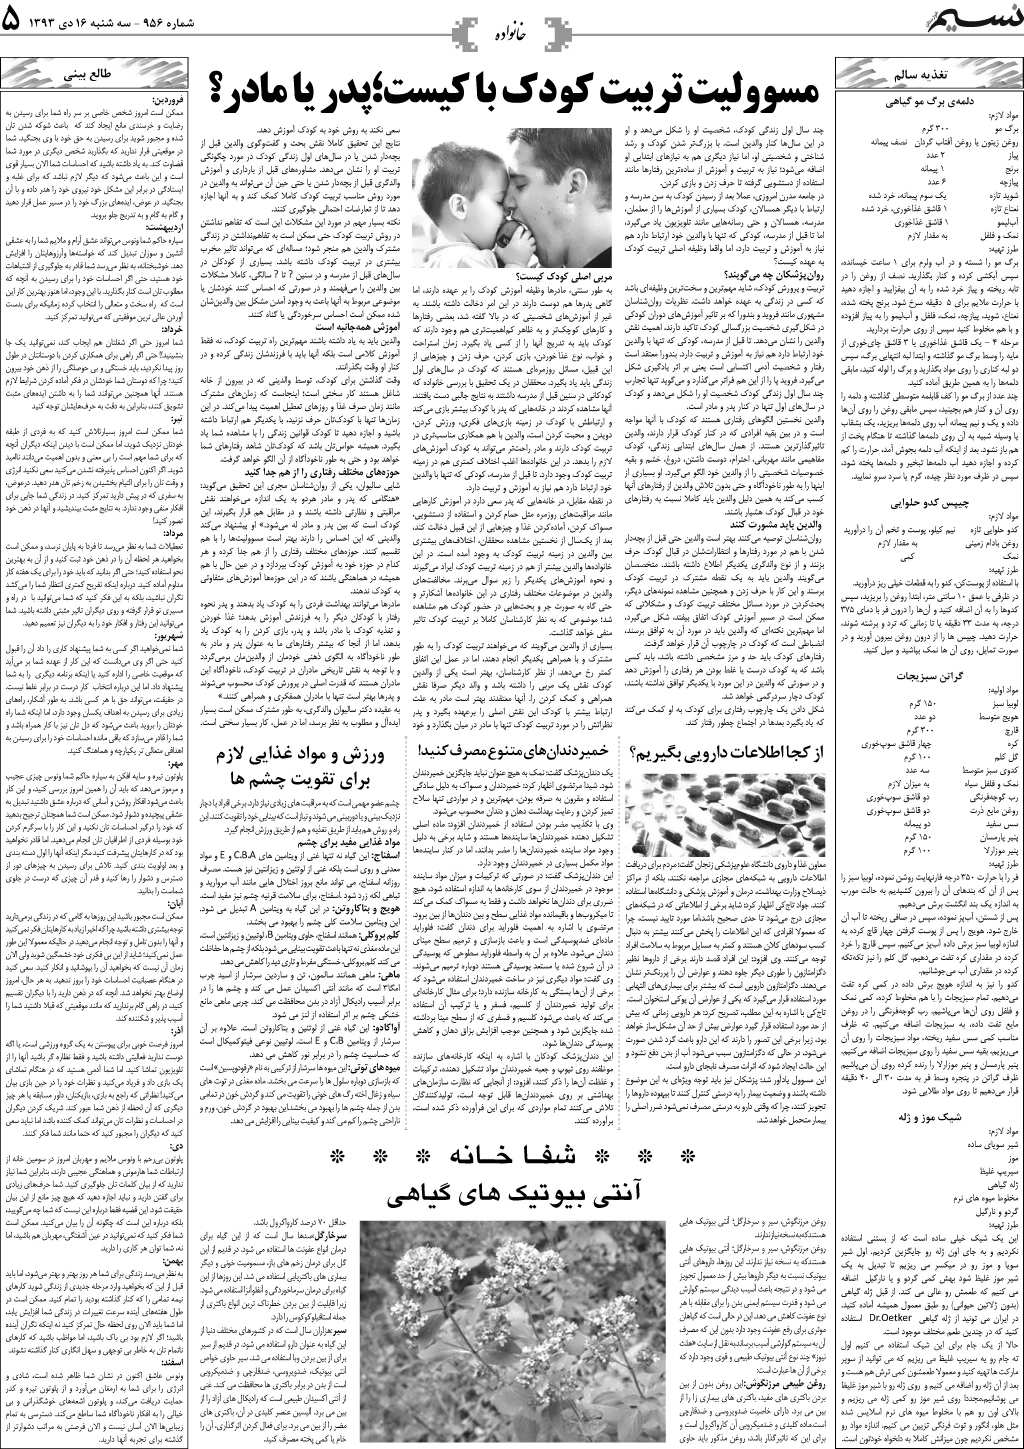 صفحه خانواده روزنامه نسیم شماره 956